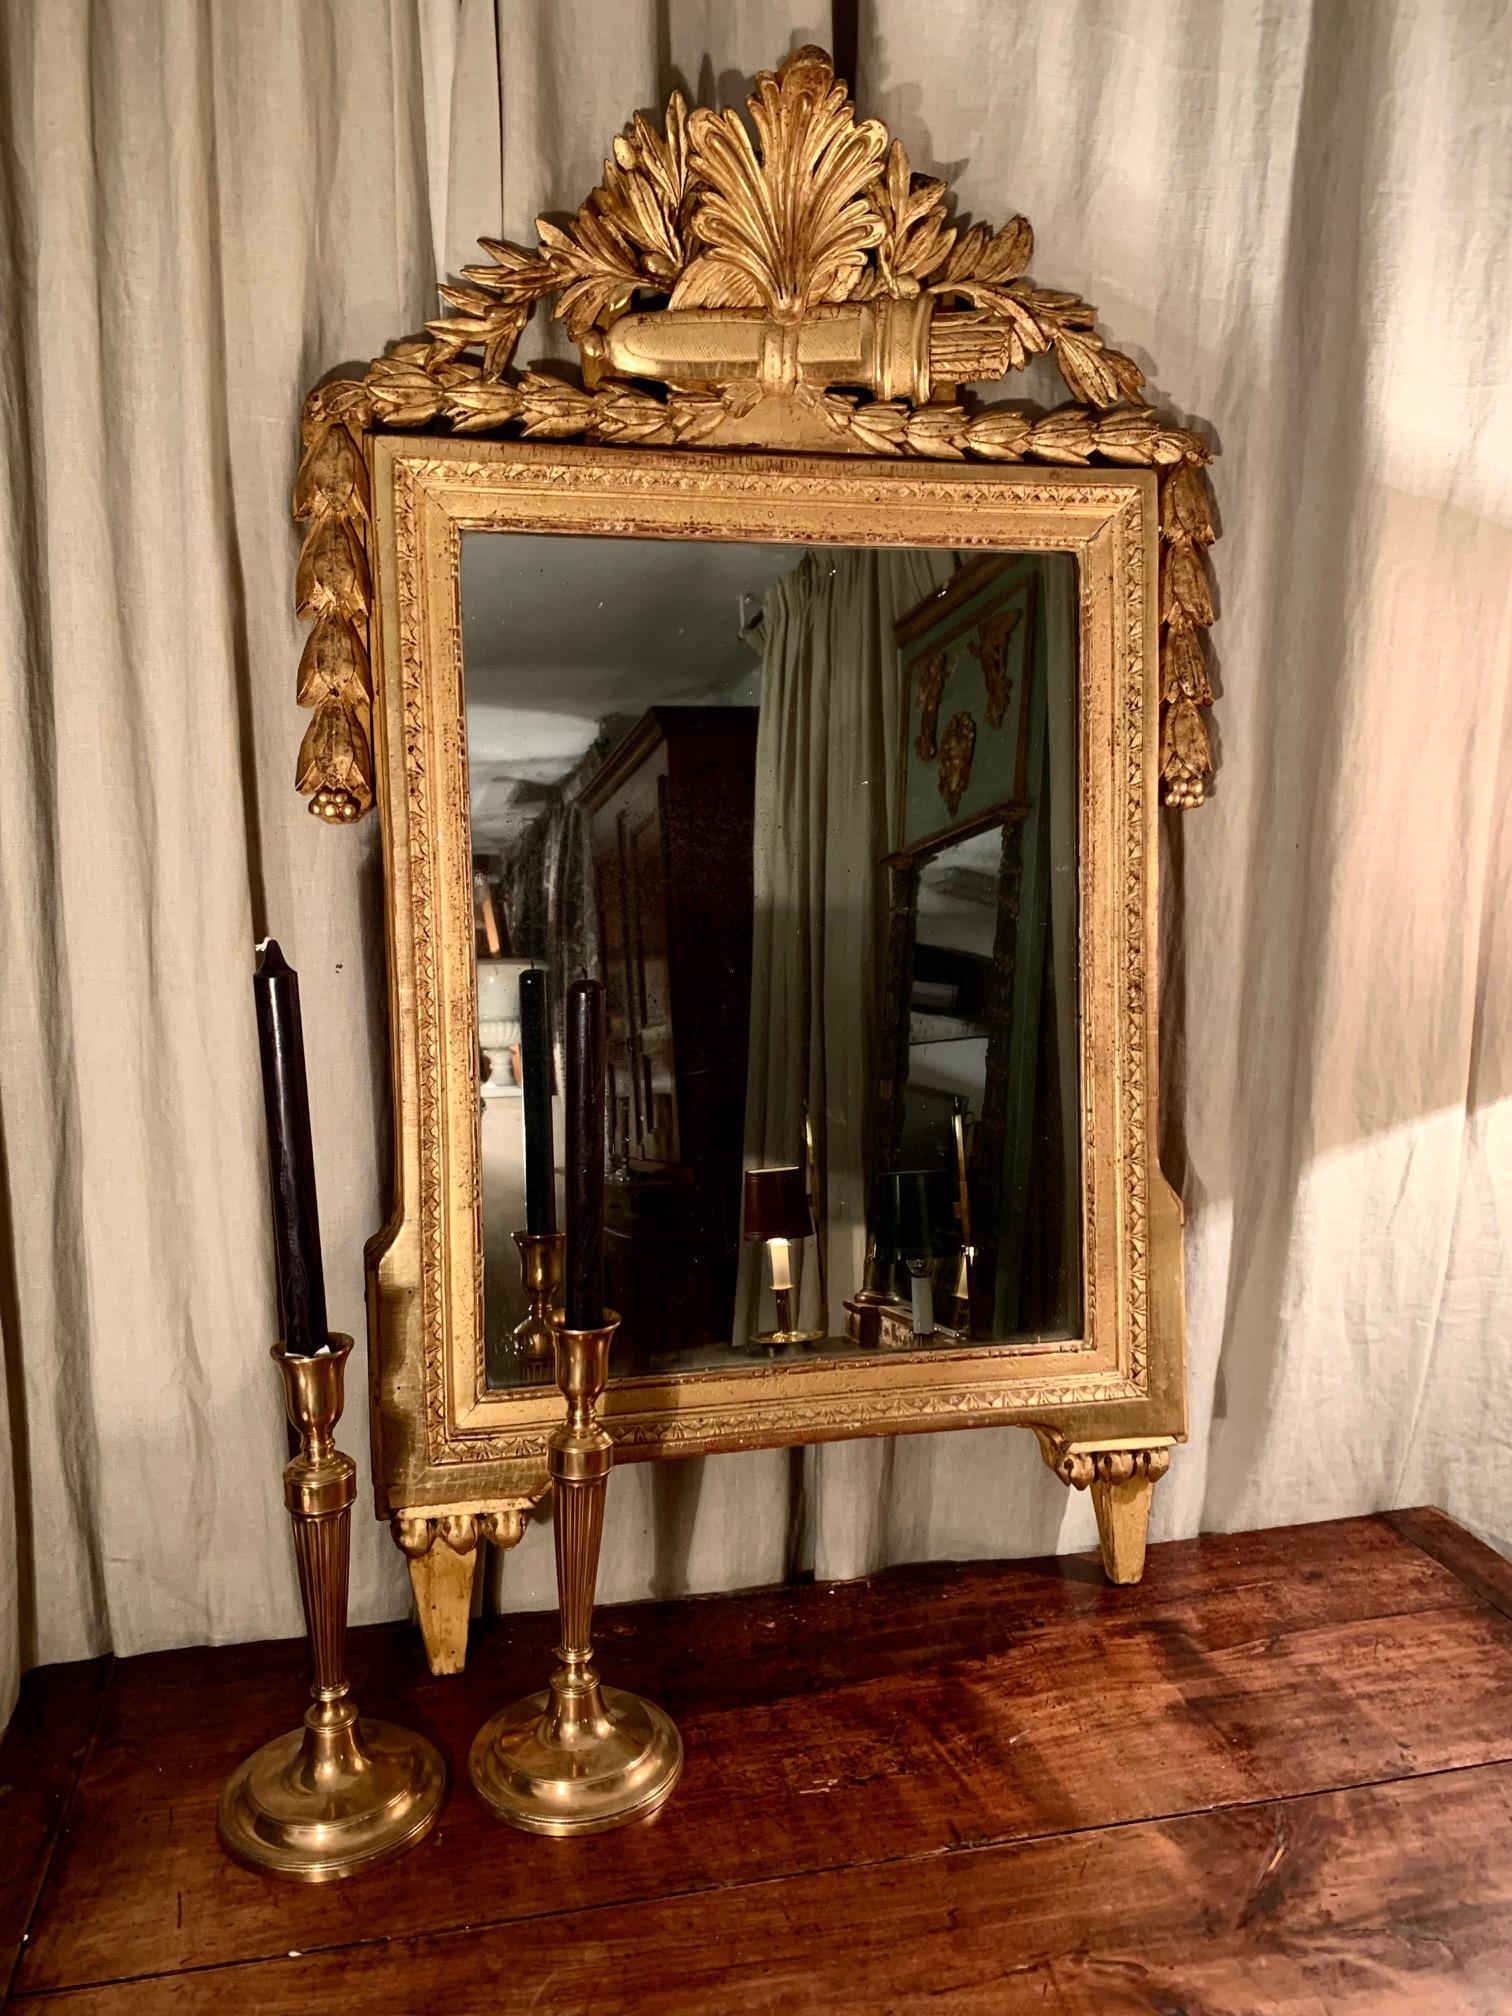 Spiegel aus Frankreich, handgeschnitzt in vergoldetem Holz, aus der LouisXVI Directory Ära oder Periode, im oberen Teil in Form einer pflanzlichen Muschel geschnitzt und direkt unter einer Schnitzerei von Pfeilen in seinem Fall, die möglicherweise